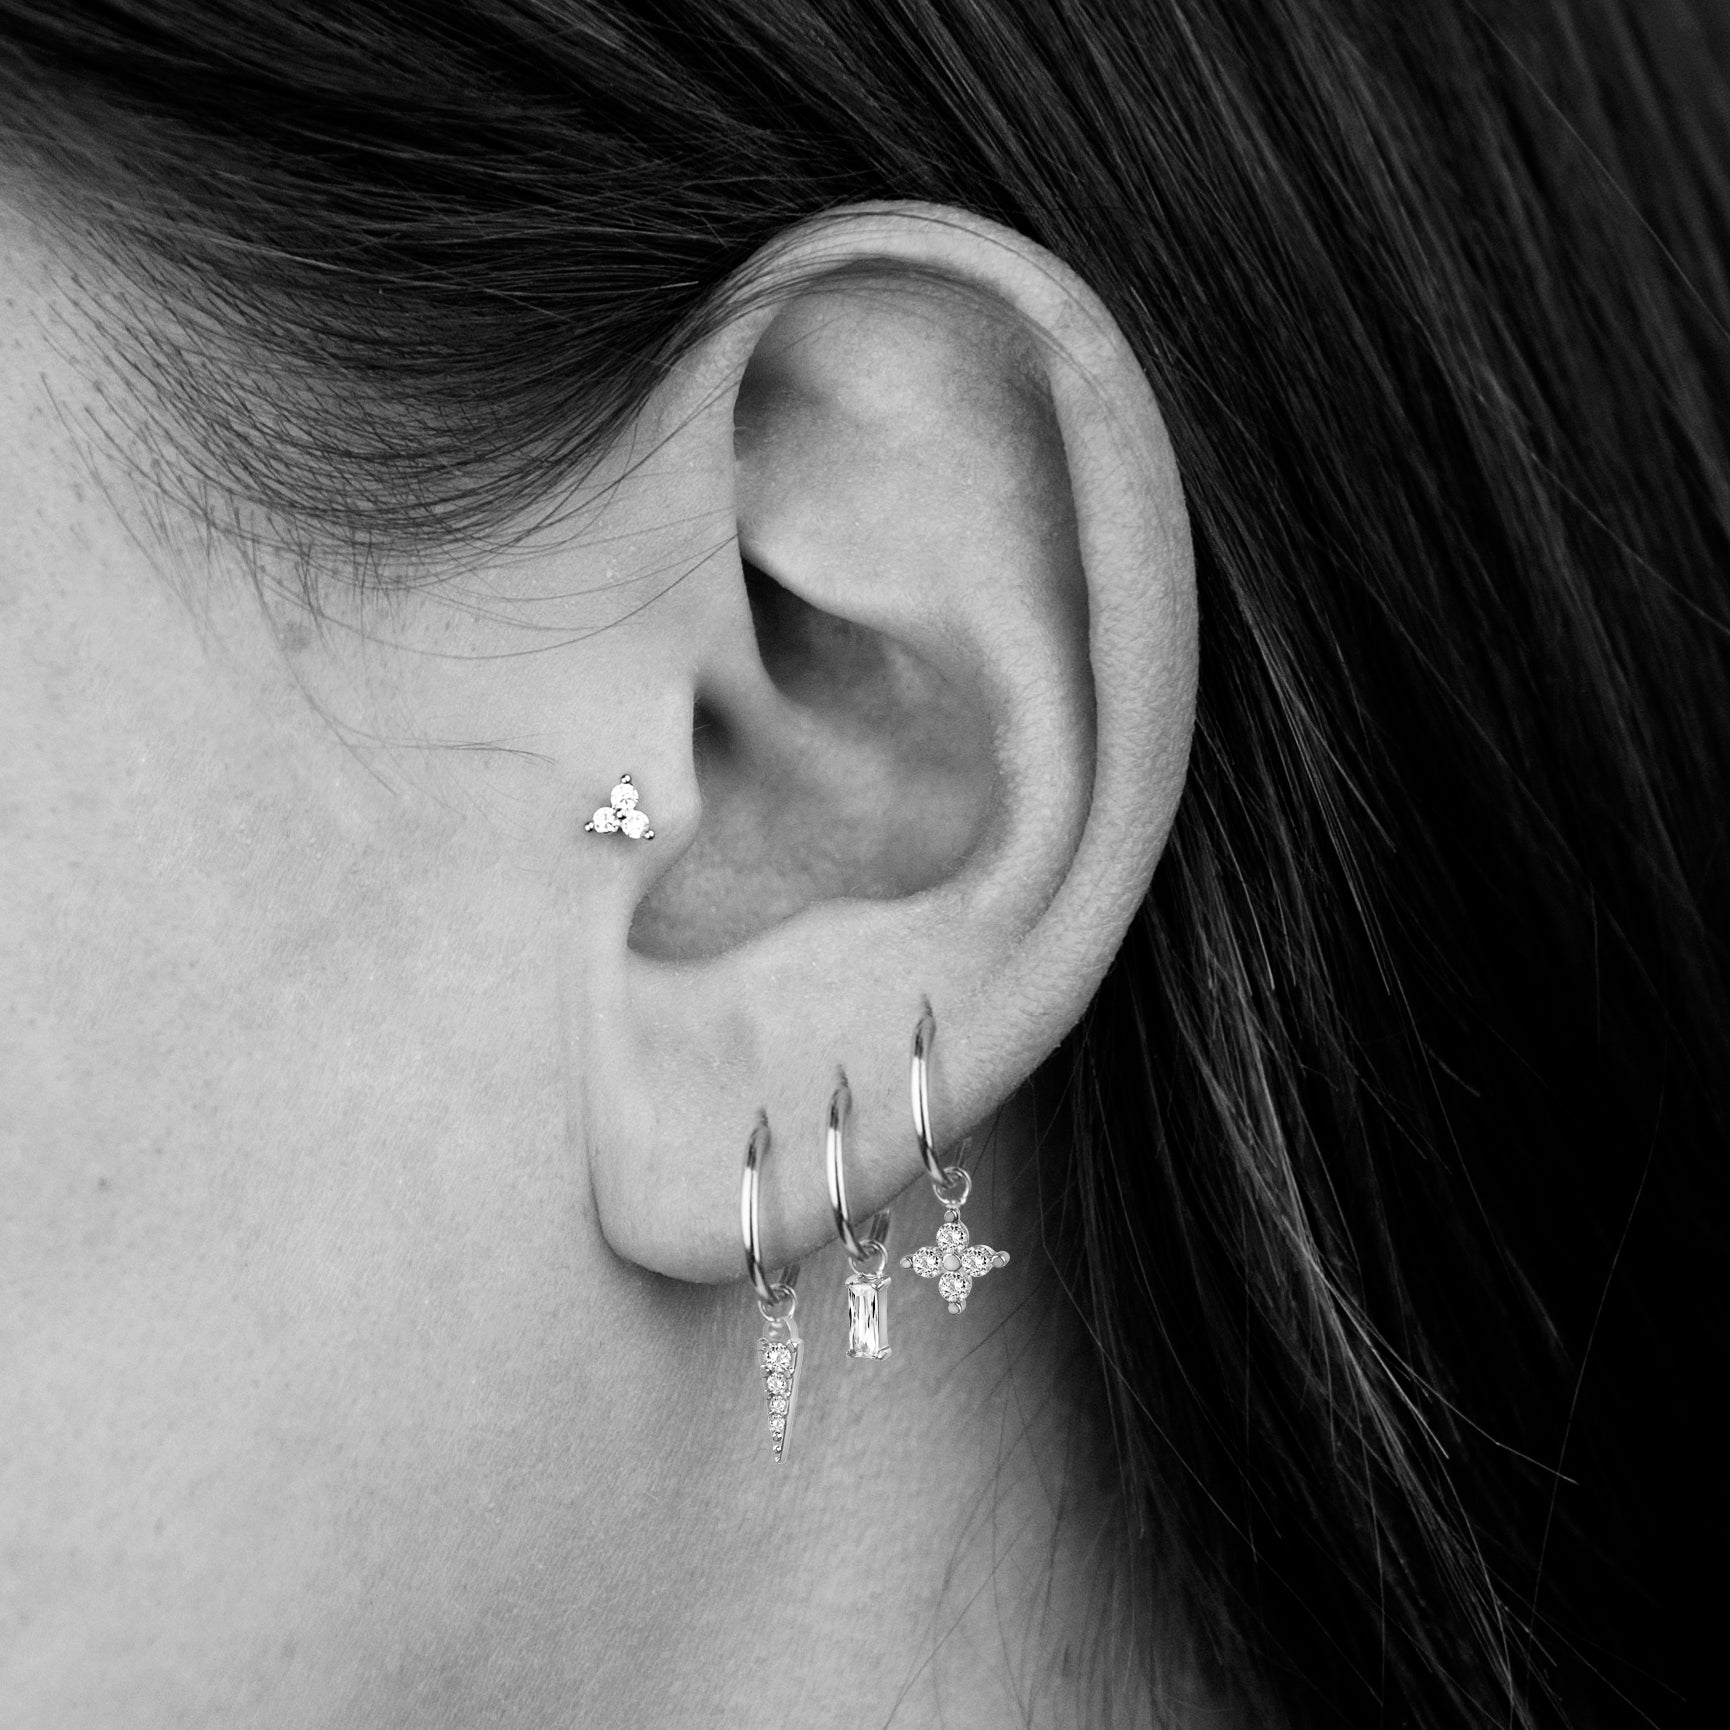 Stainless steel hoop earrings with hanging jewels